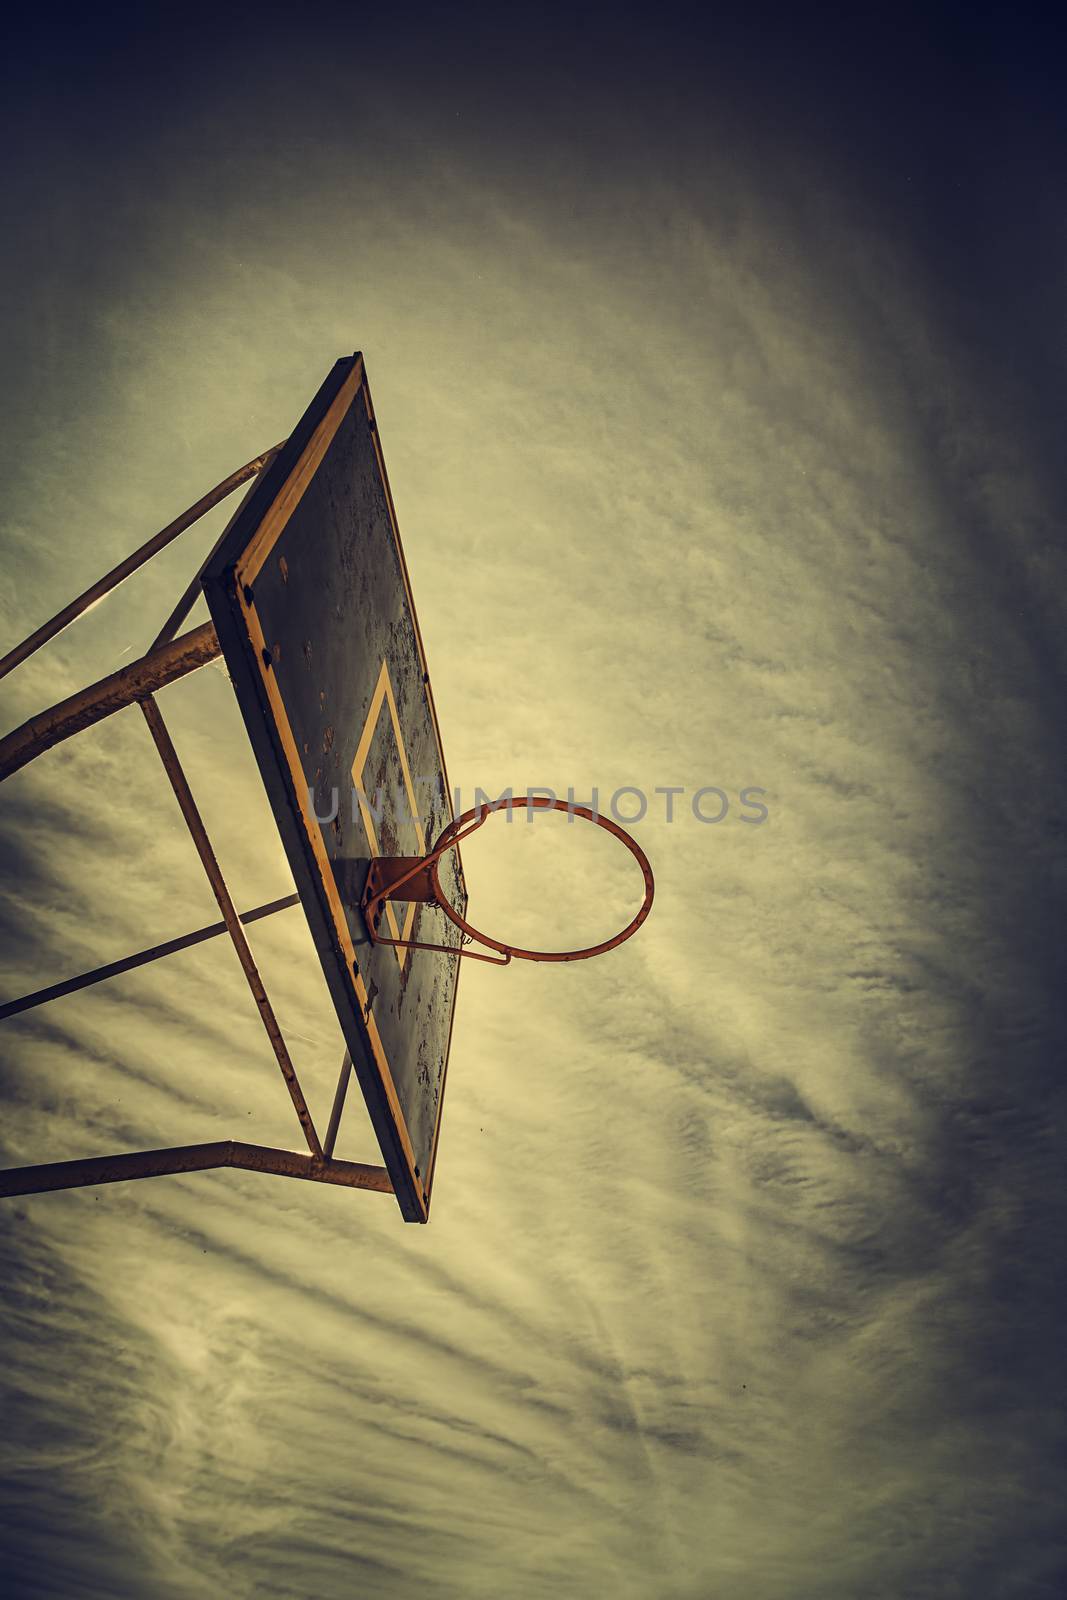 Basket basketball, detail of an outdoor basketball court